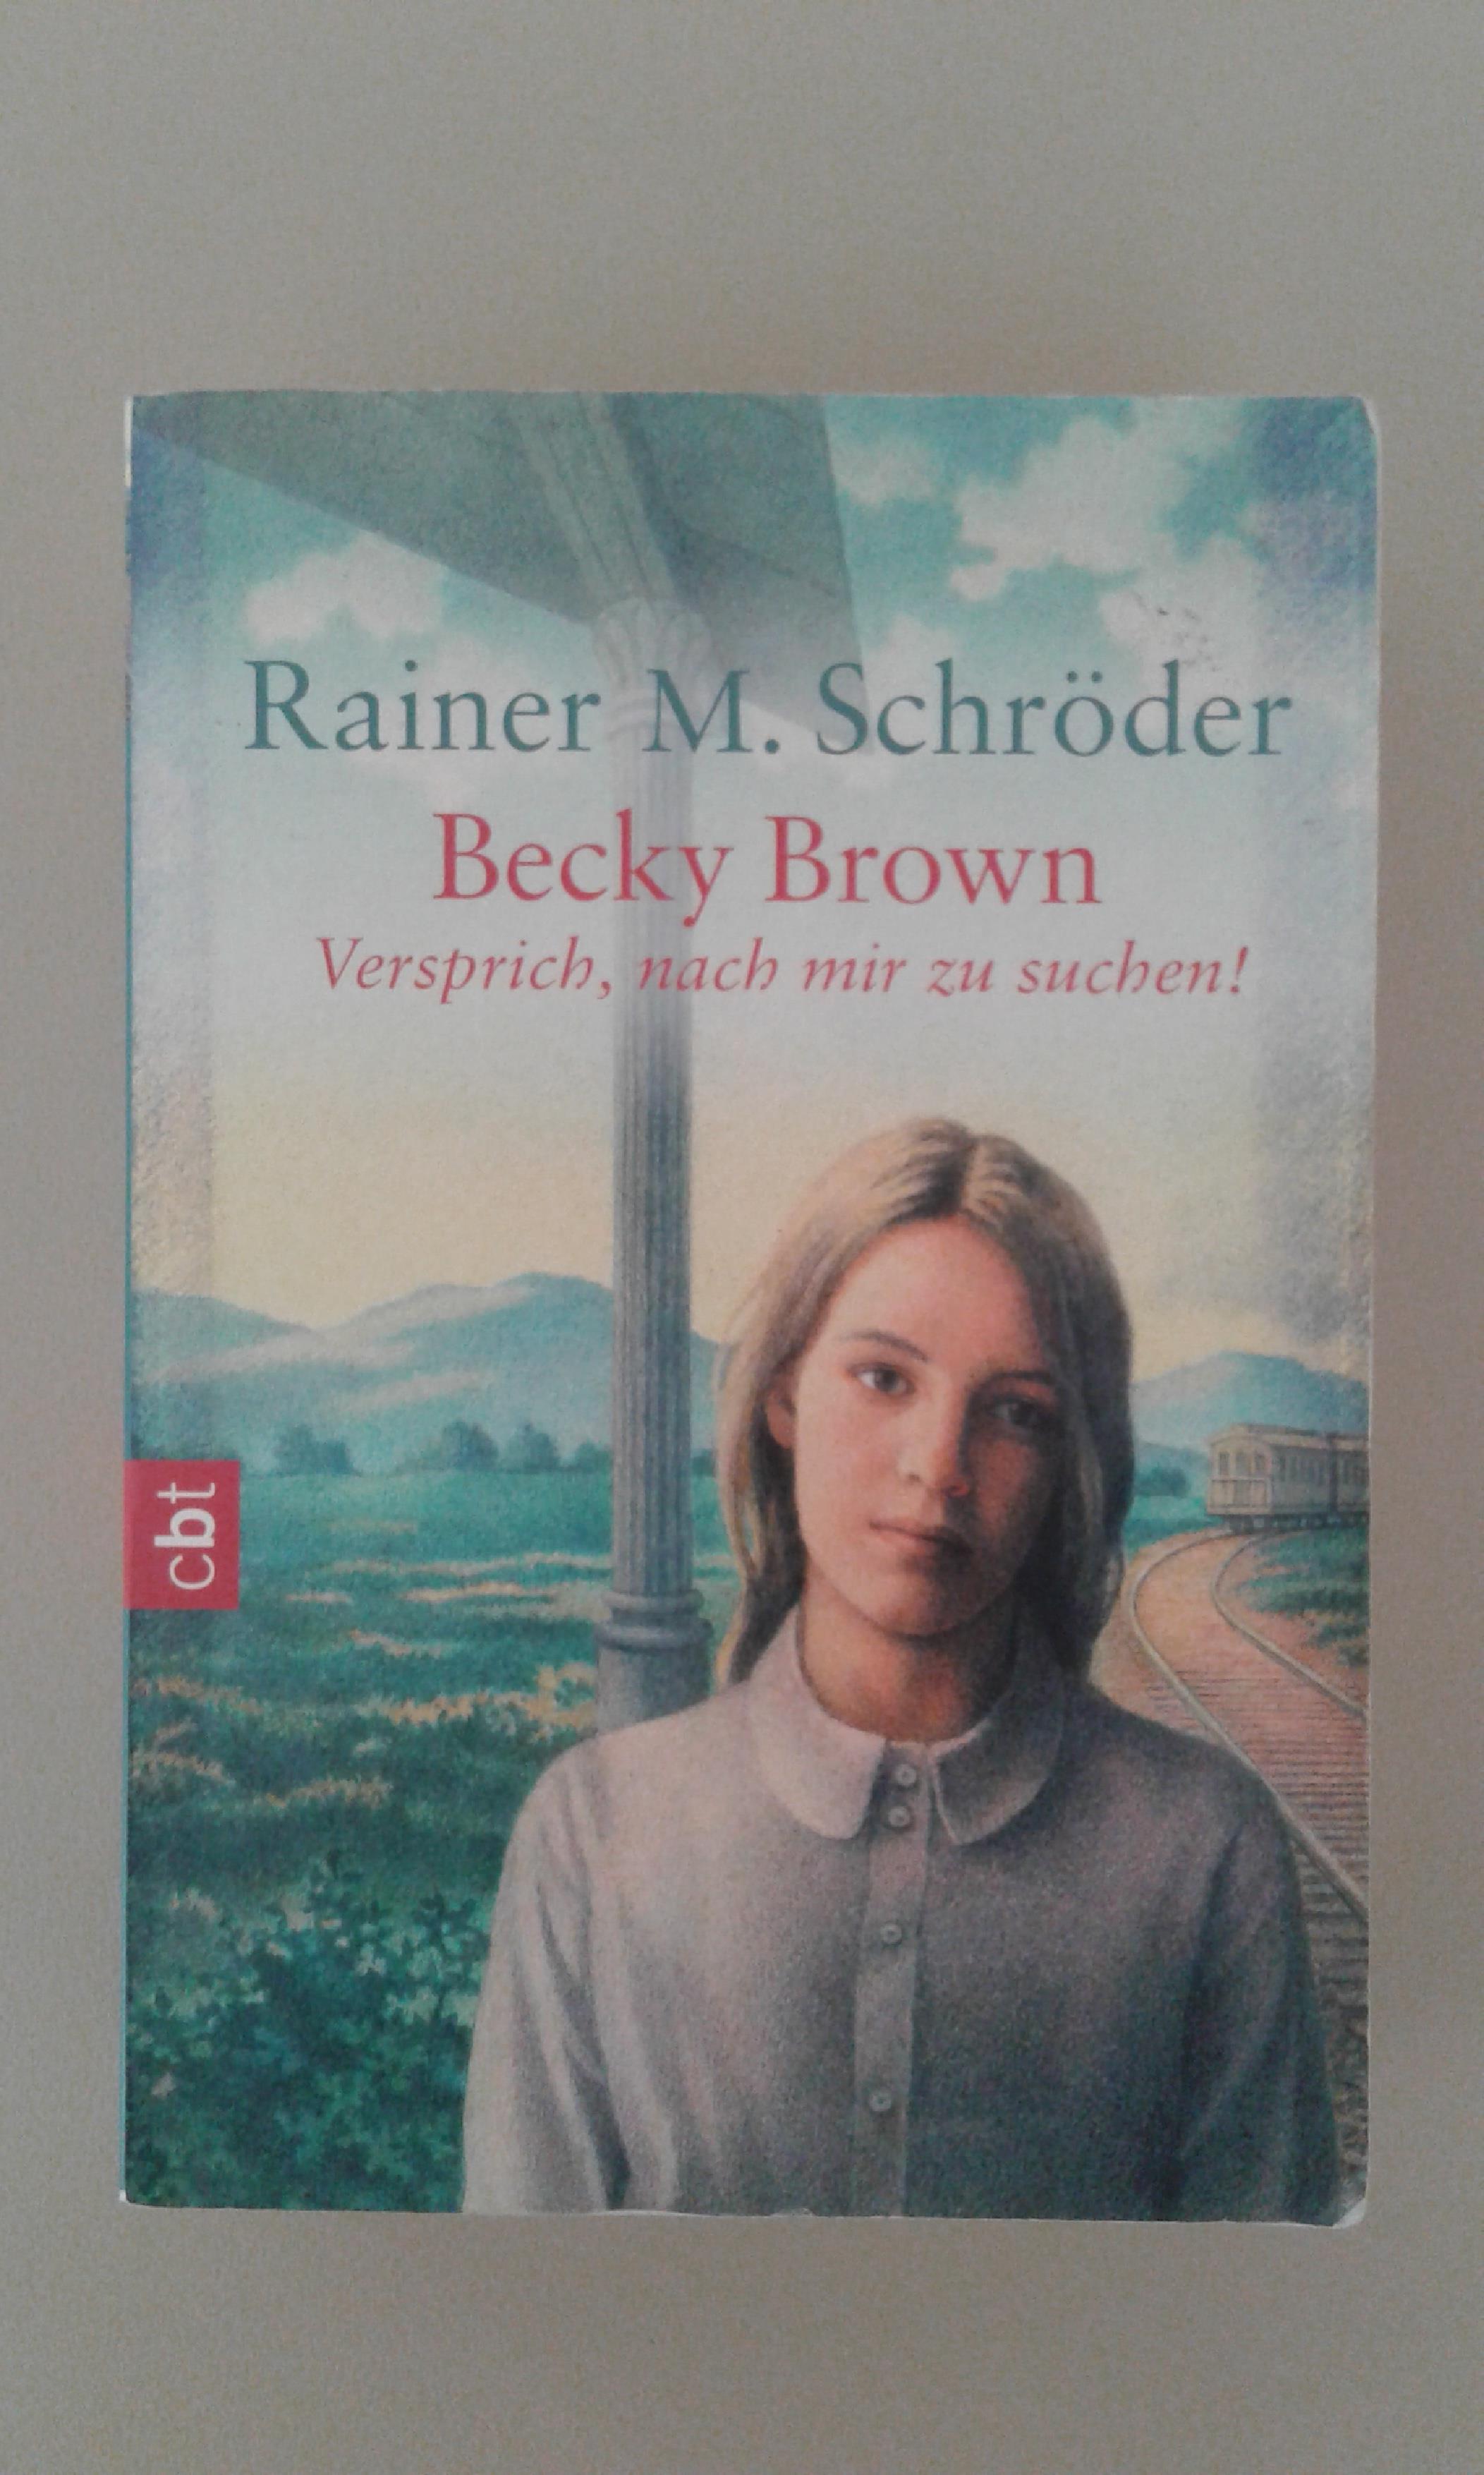 Schröder, Becky Brown - versprich, nach mir zu suchen!